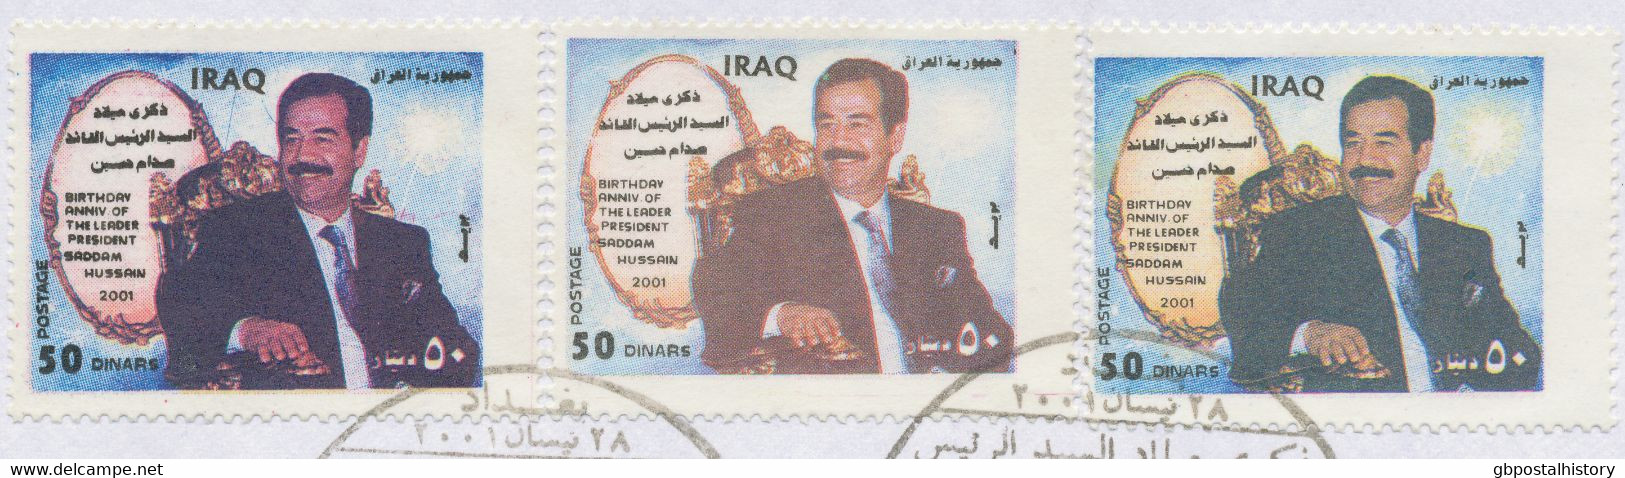 IRAK 2001, 28. April. 64. Geburtstag Von Saddam Hussein, 50 D Saddam Im Schwarzen Anzug (3 X) A. Kab.-FDC, ABARTEN: - Irak